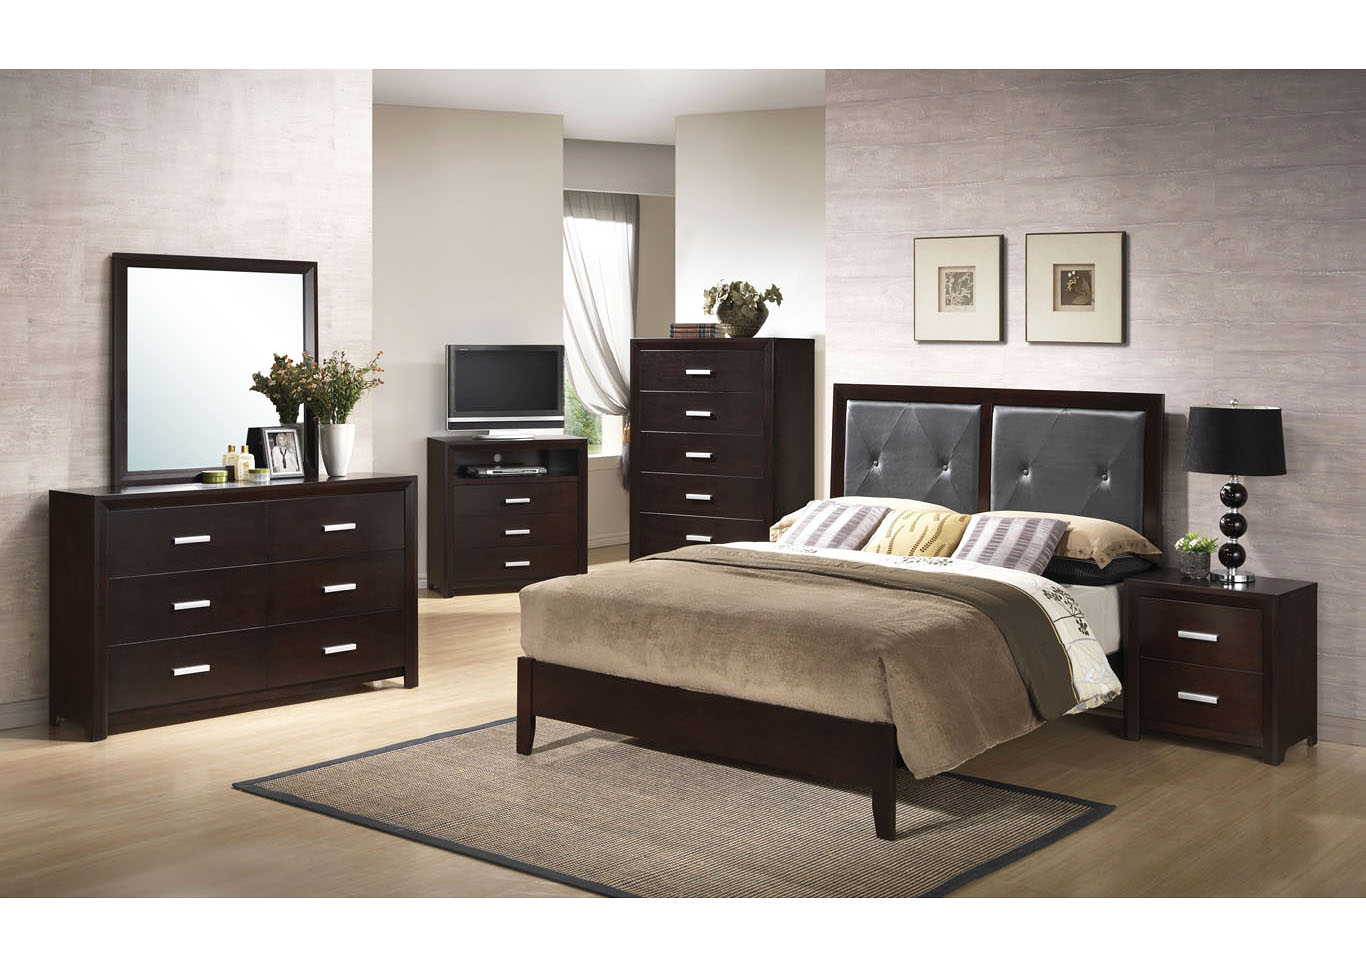 Cappuccino Panel Queen 4 Piece Bedroom Set W/ Nightstand, Dresser & Mirror,Global Trading